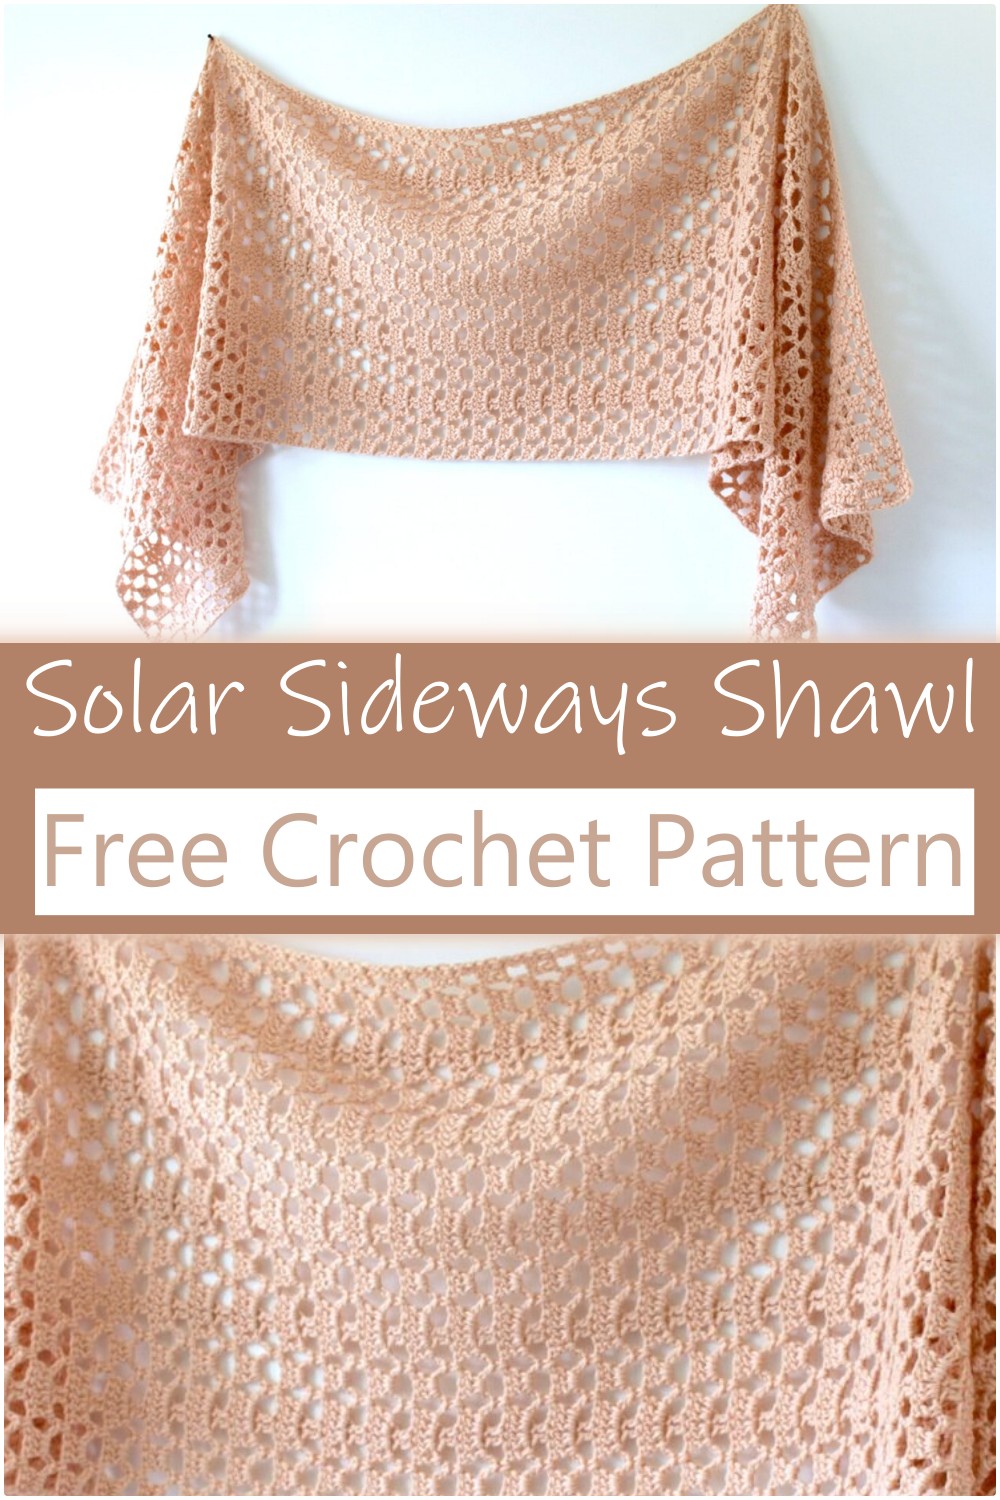 Solar Sideways Crochet Shawl Pattern